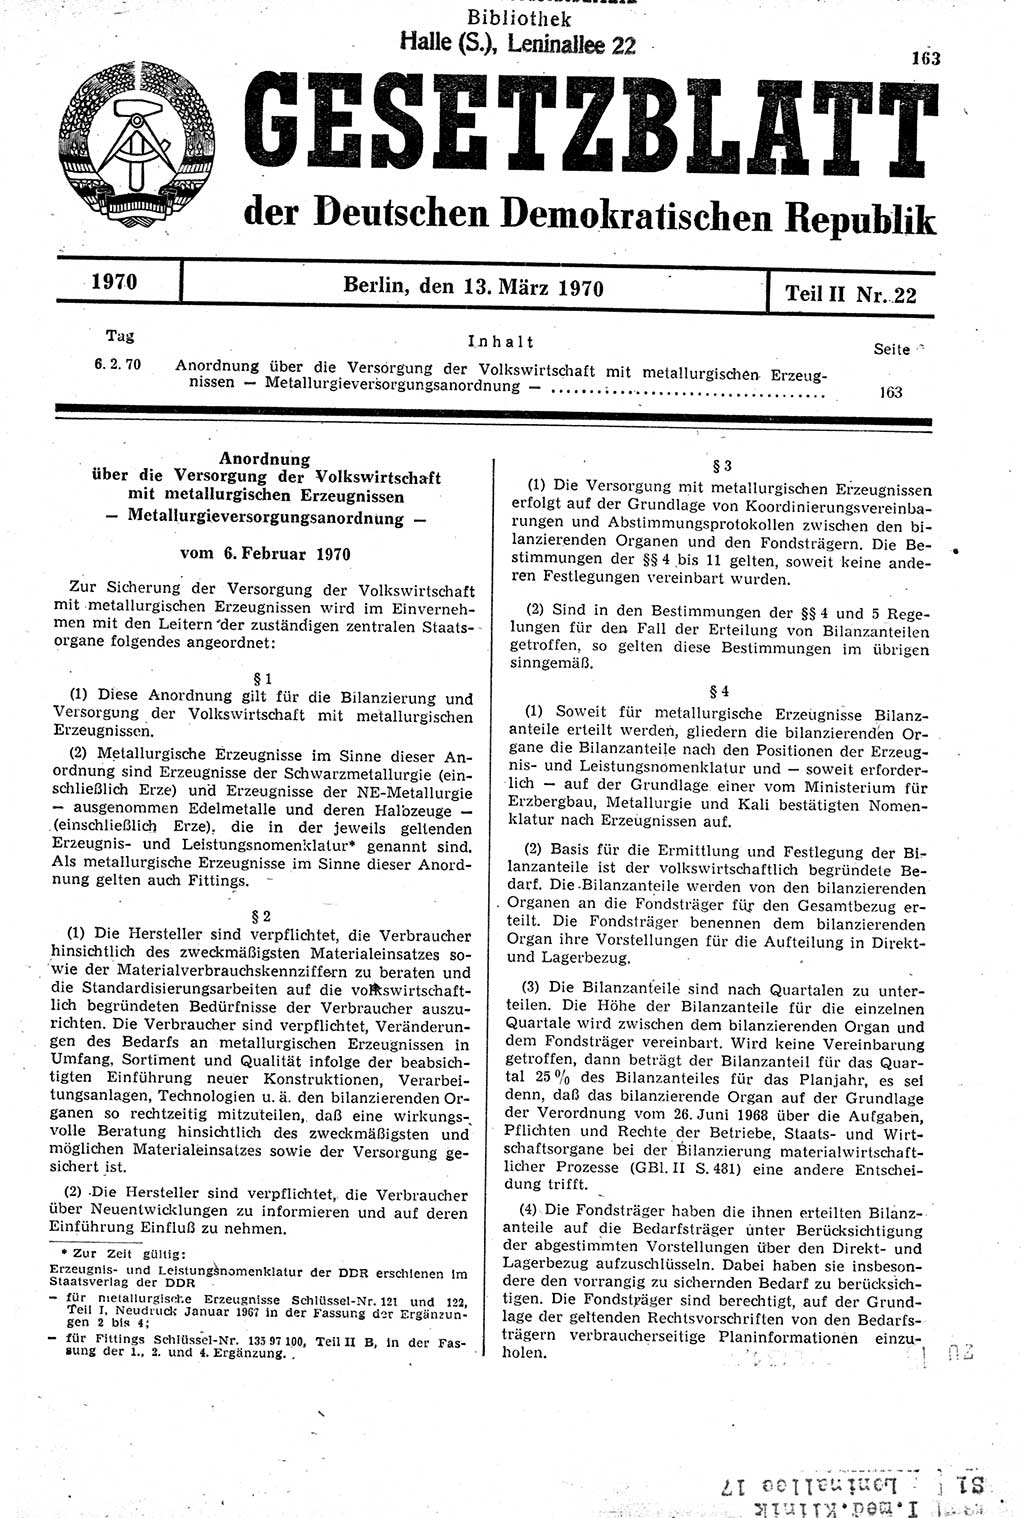 Gesetzblatt (GBl.) der Deutschen Demokratischen Republik (DDR) Teil ⅠⅠ 1970, Seite 163 (GBl. DDR ⅠⅠ 1970, S. 163)